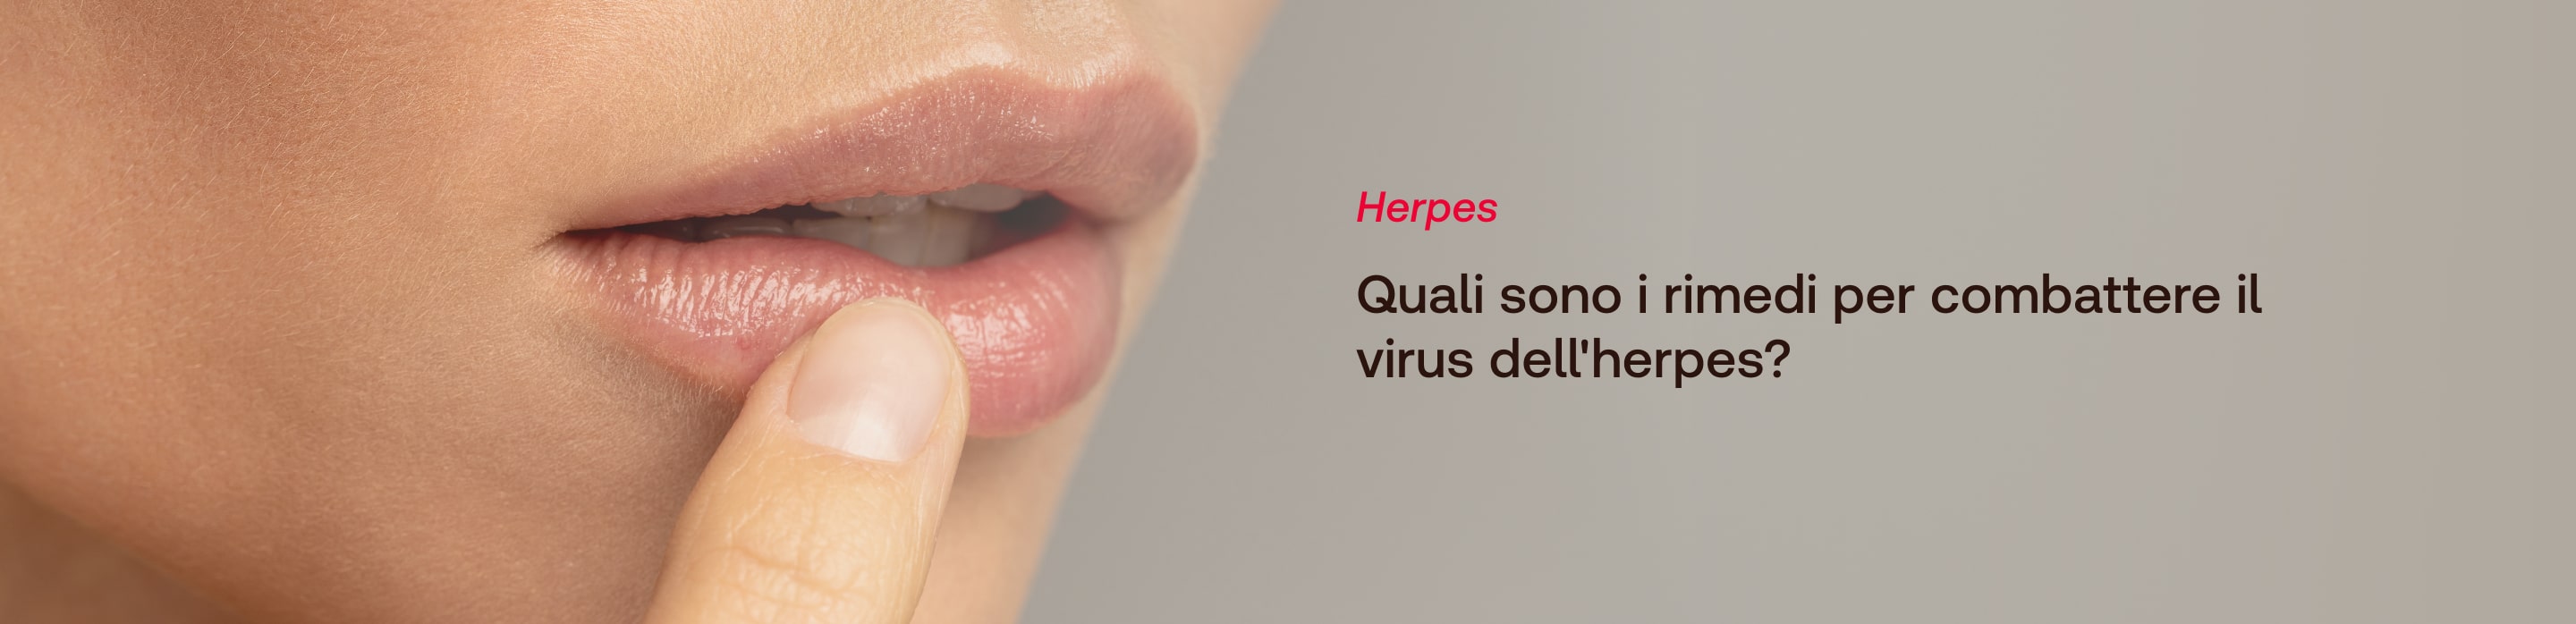 Herpes - GUIDA